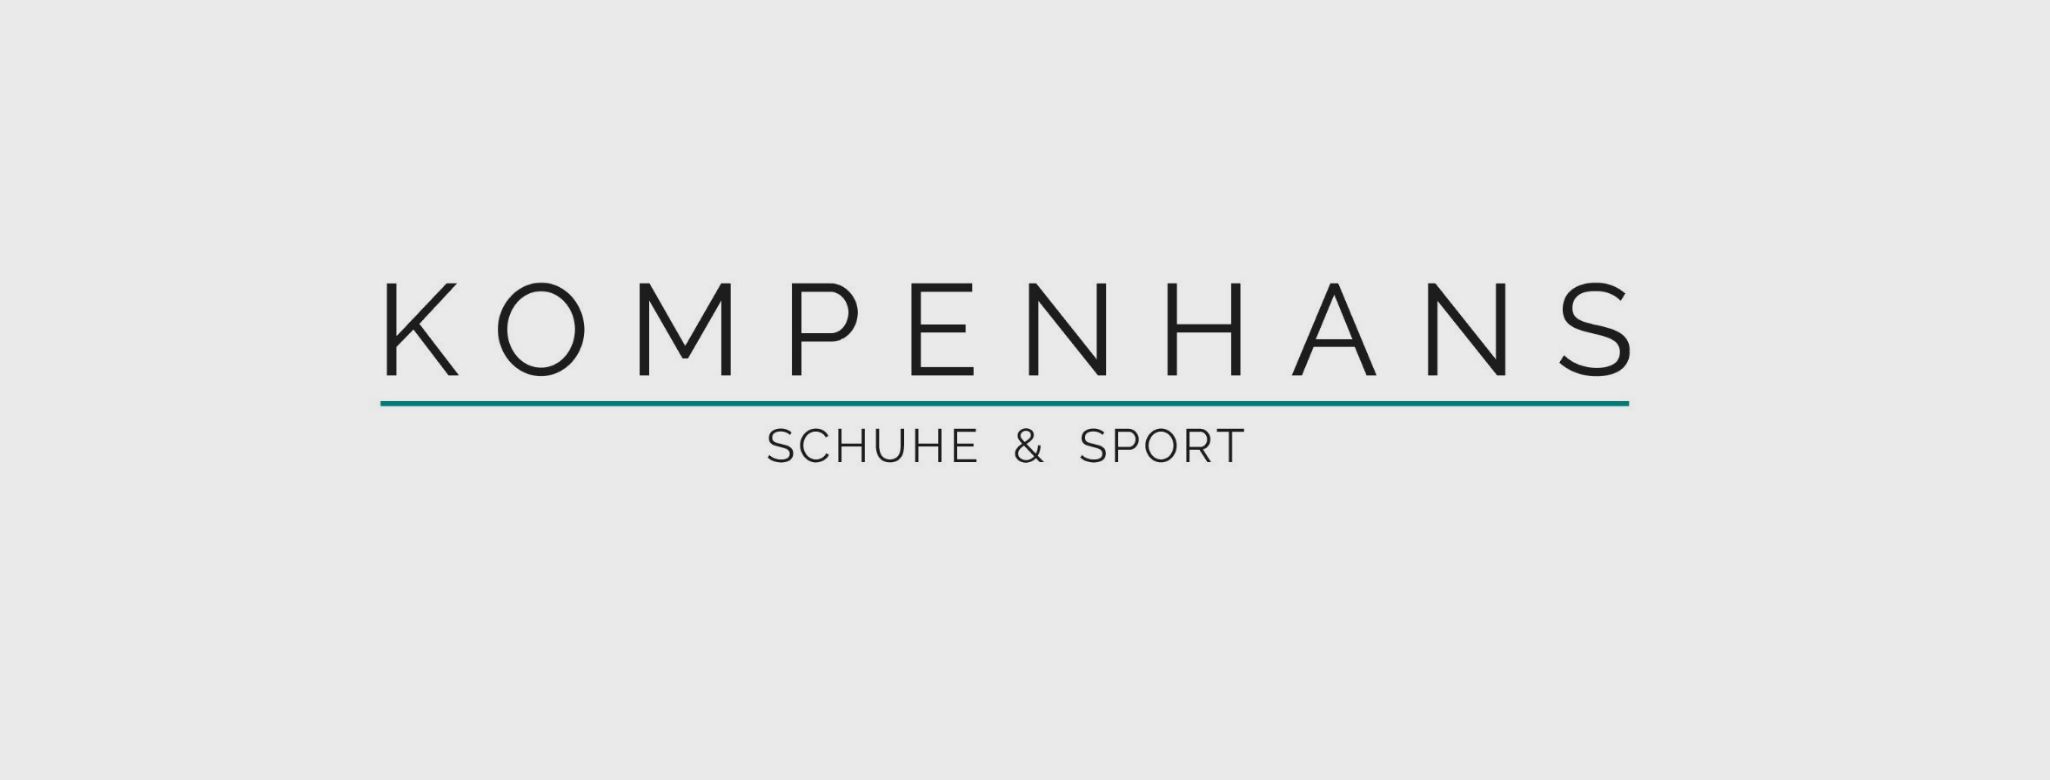 Kompenhans Schuhe & Sport